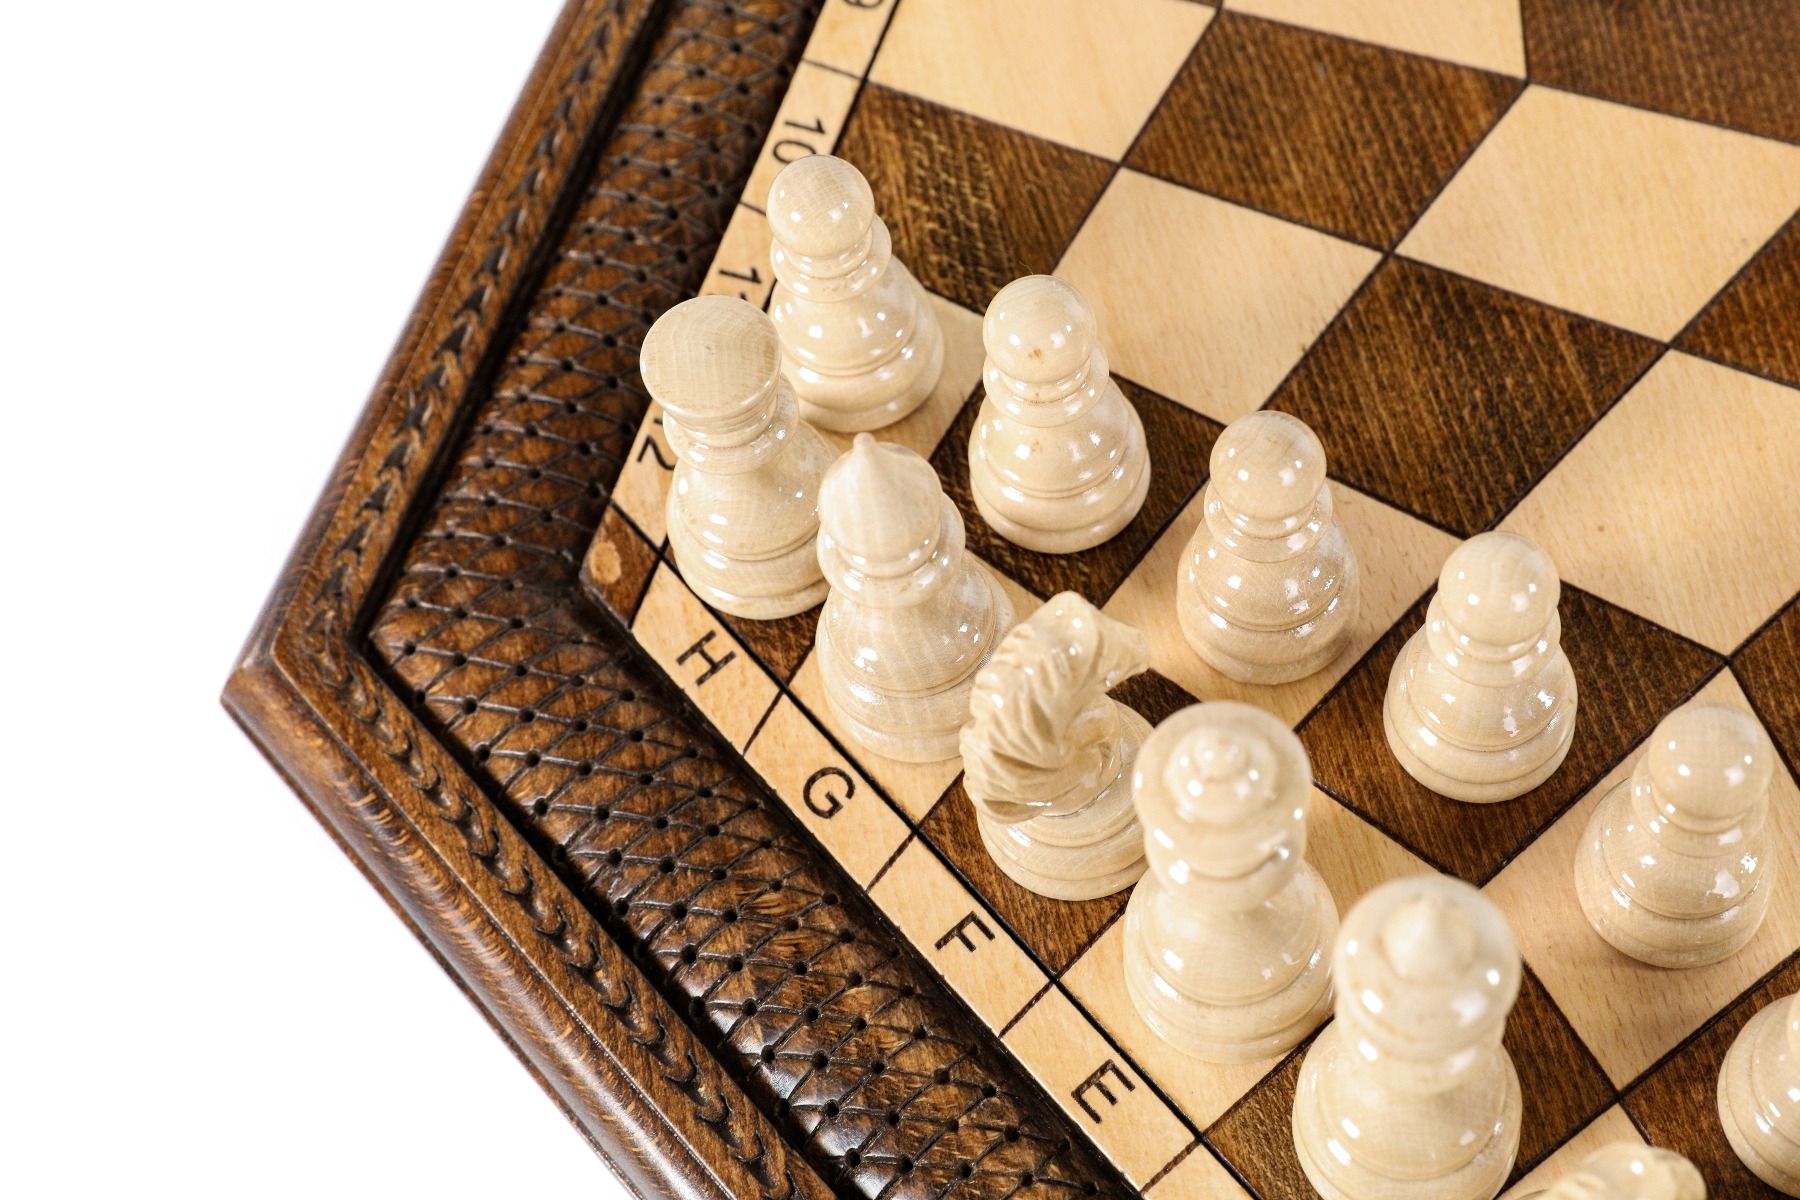 Three Player Chess Set